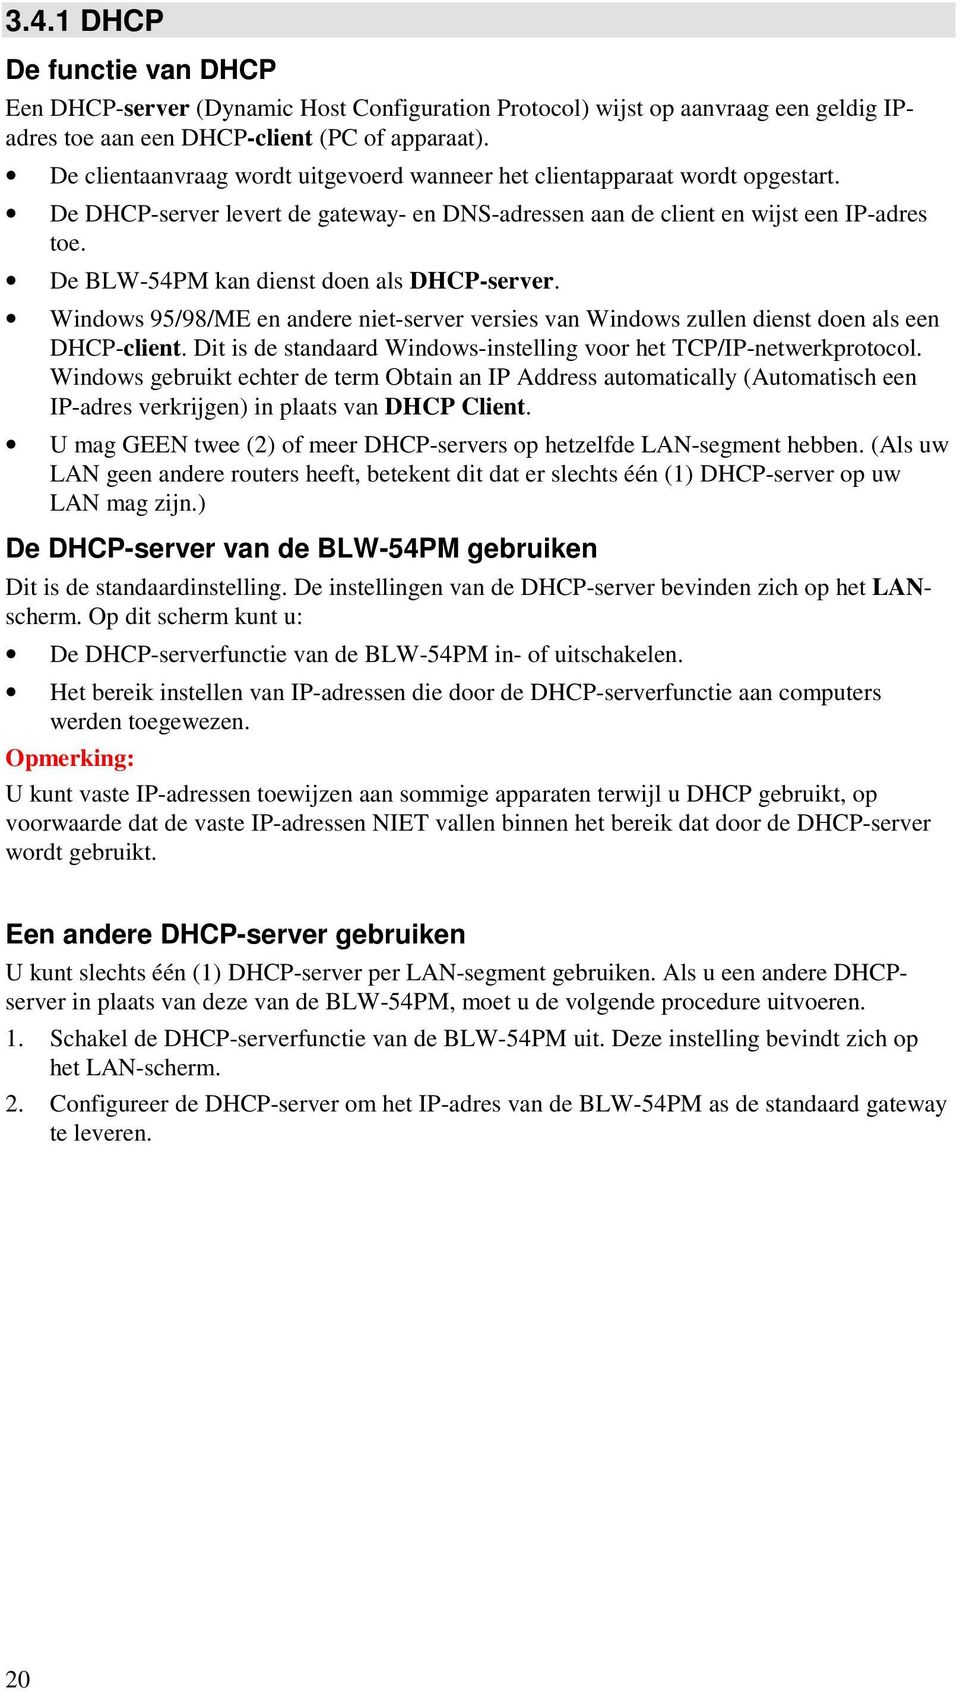 De BLW-54PM kan dienst doen als DHCP-server. Windows 95/98/ME en andere niet-server versies van Windows zullen dienst doen als een DHCP-client.